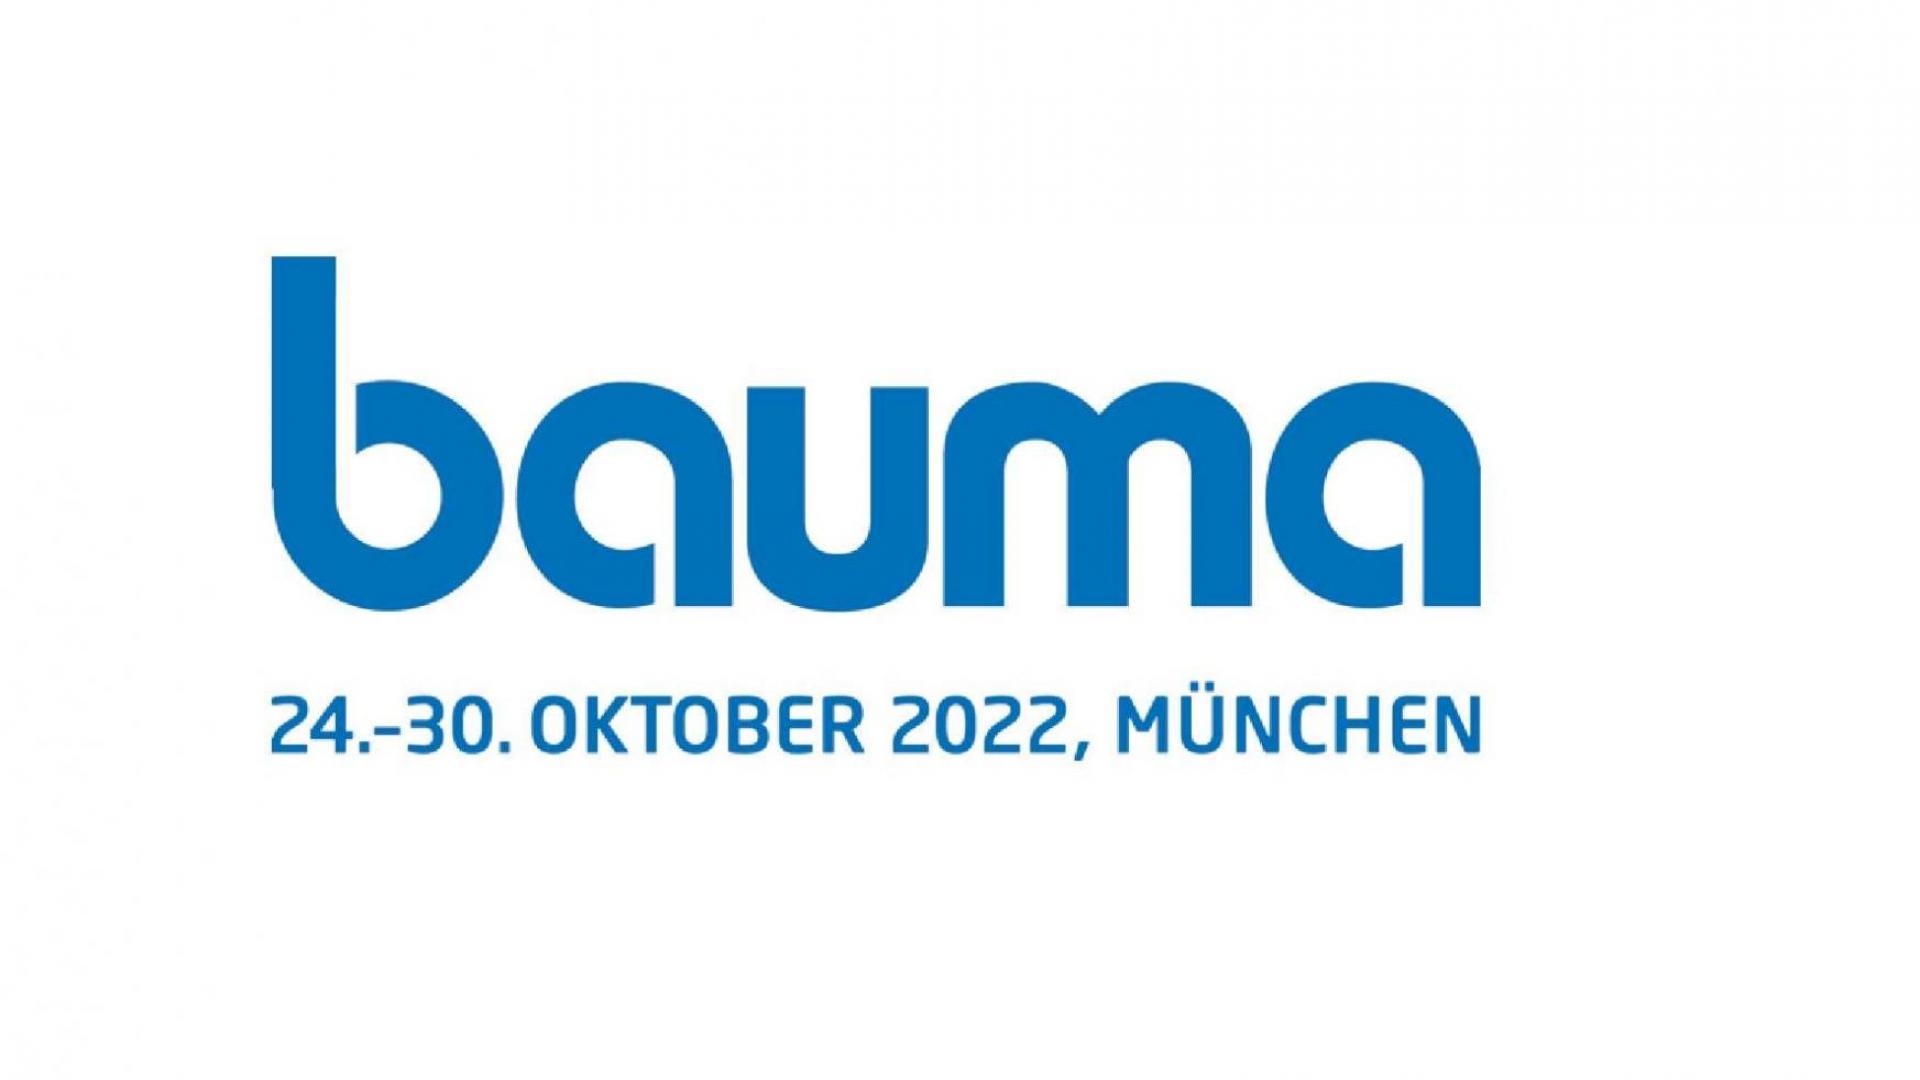 VDL shows bit time at BAUMA 2022 in Munich